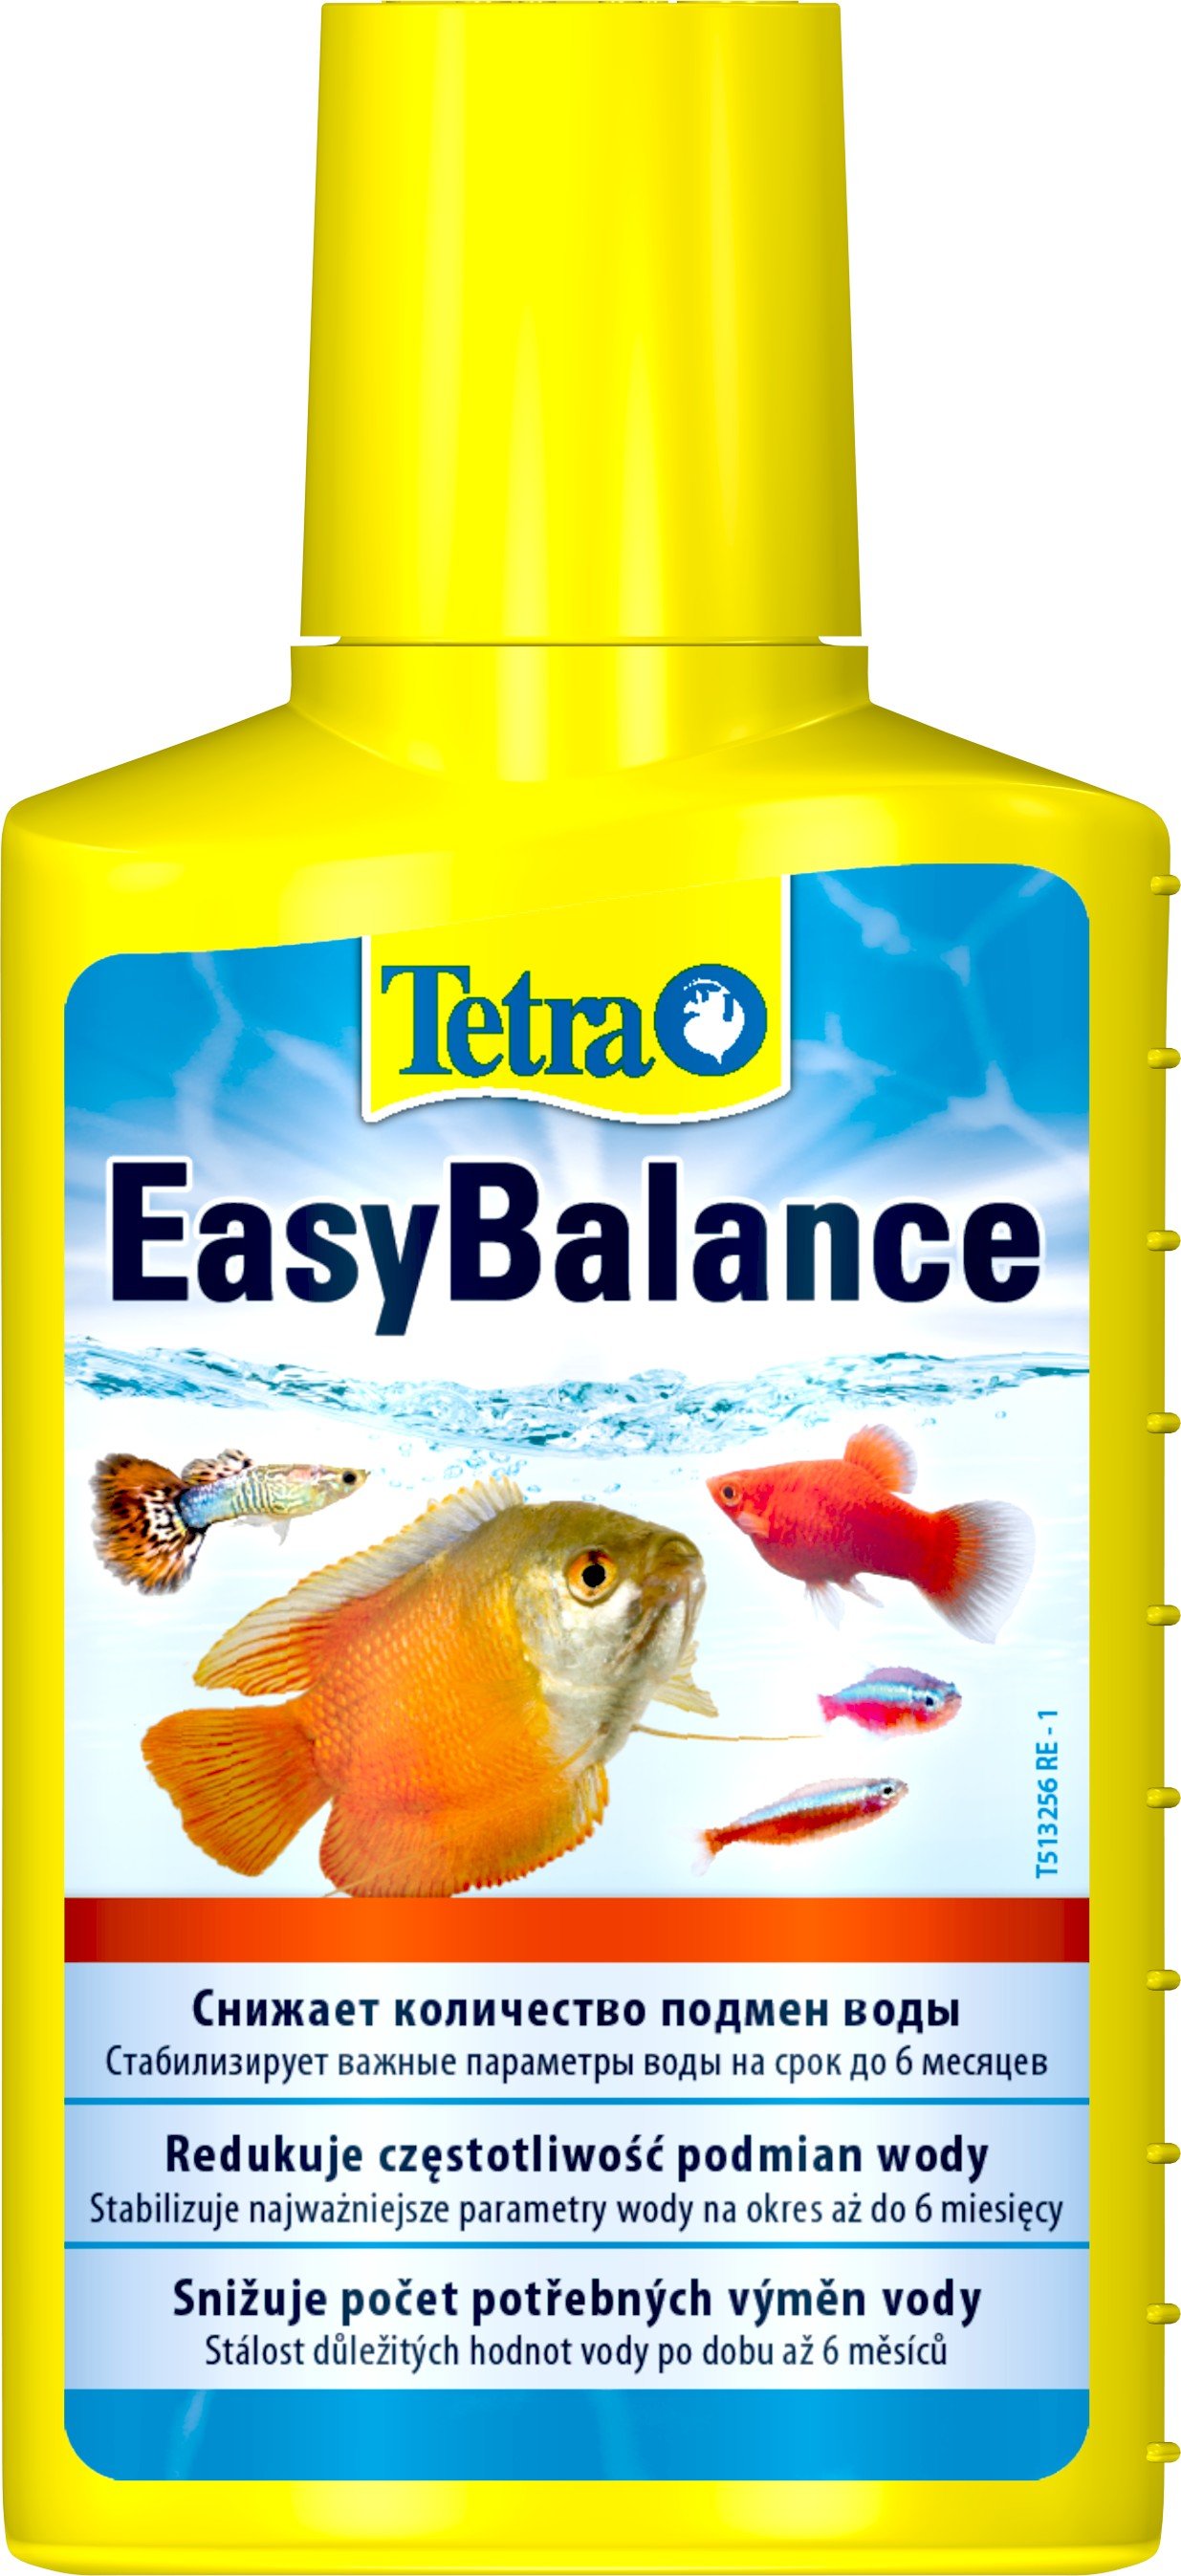 Засіб для стабілізації показників води в акваріумі Tetra Easy Balance, 100 мл (770492) - фото 1